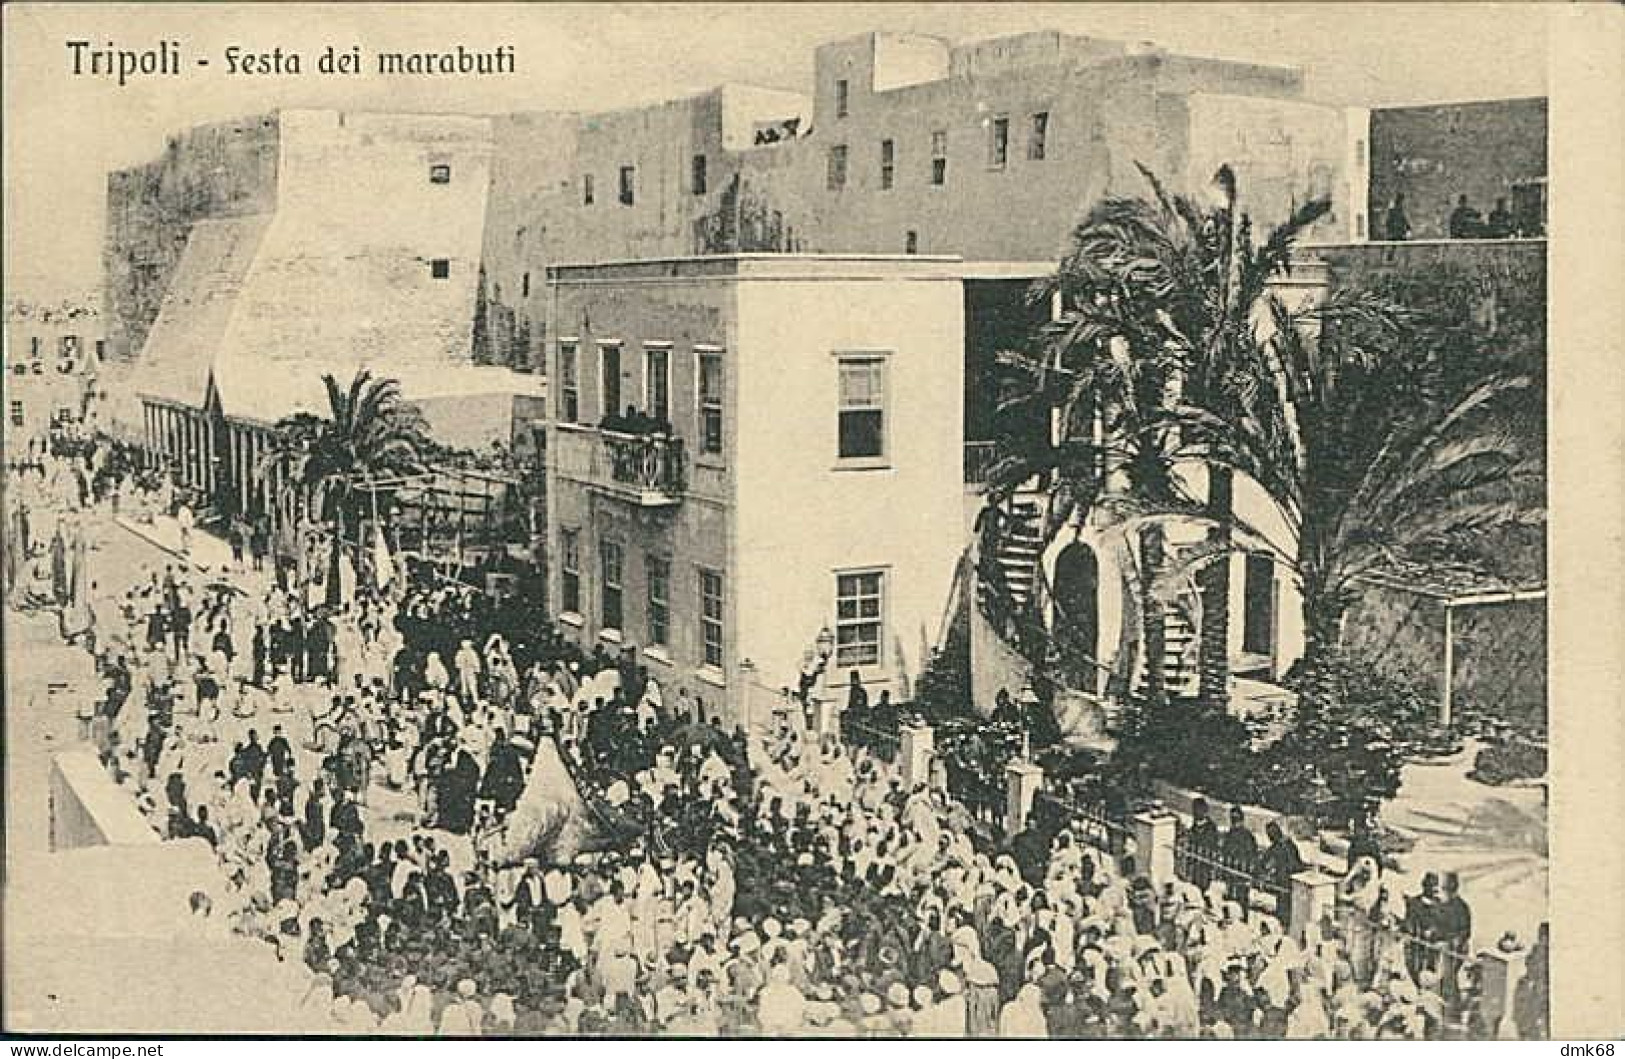 LIBIA / LIBYA - TRIPOLI - FESTA DEI MARABUTI - EDIT TRAMPETTI & MIGLIACCIO - 1910s (12452) - Libya